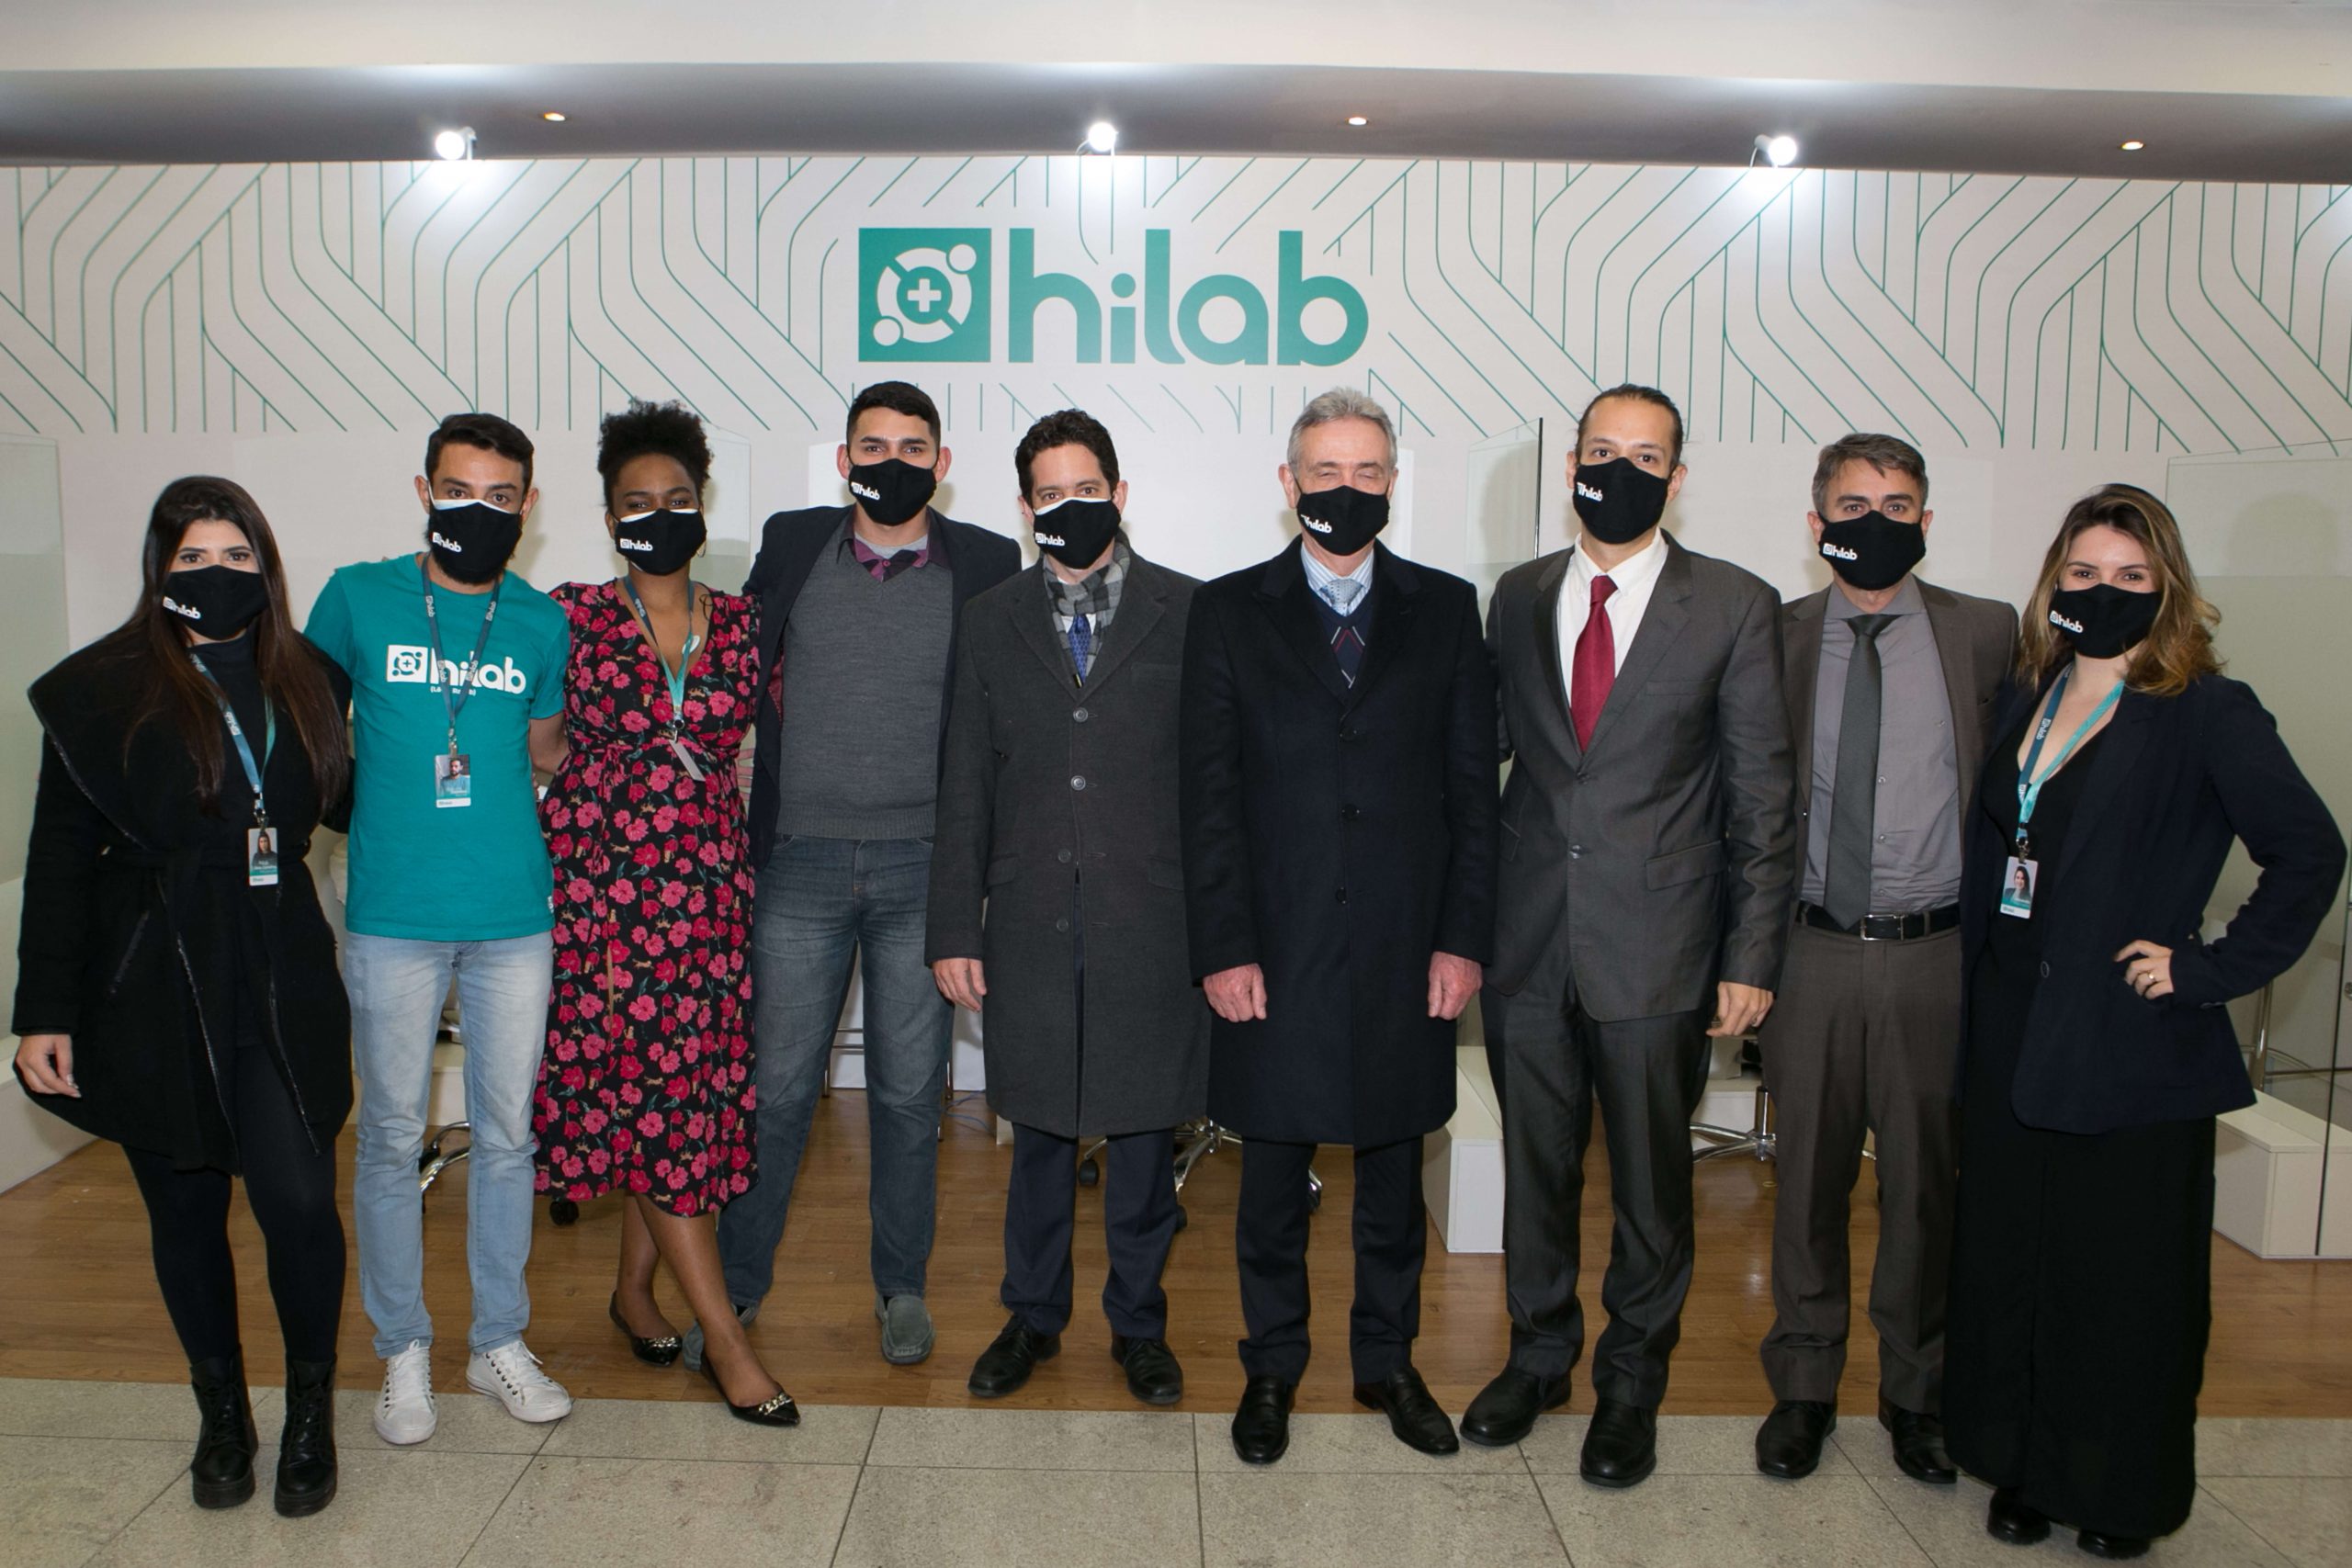 equipe Hilab nos 100 mais influentes da década